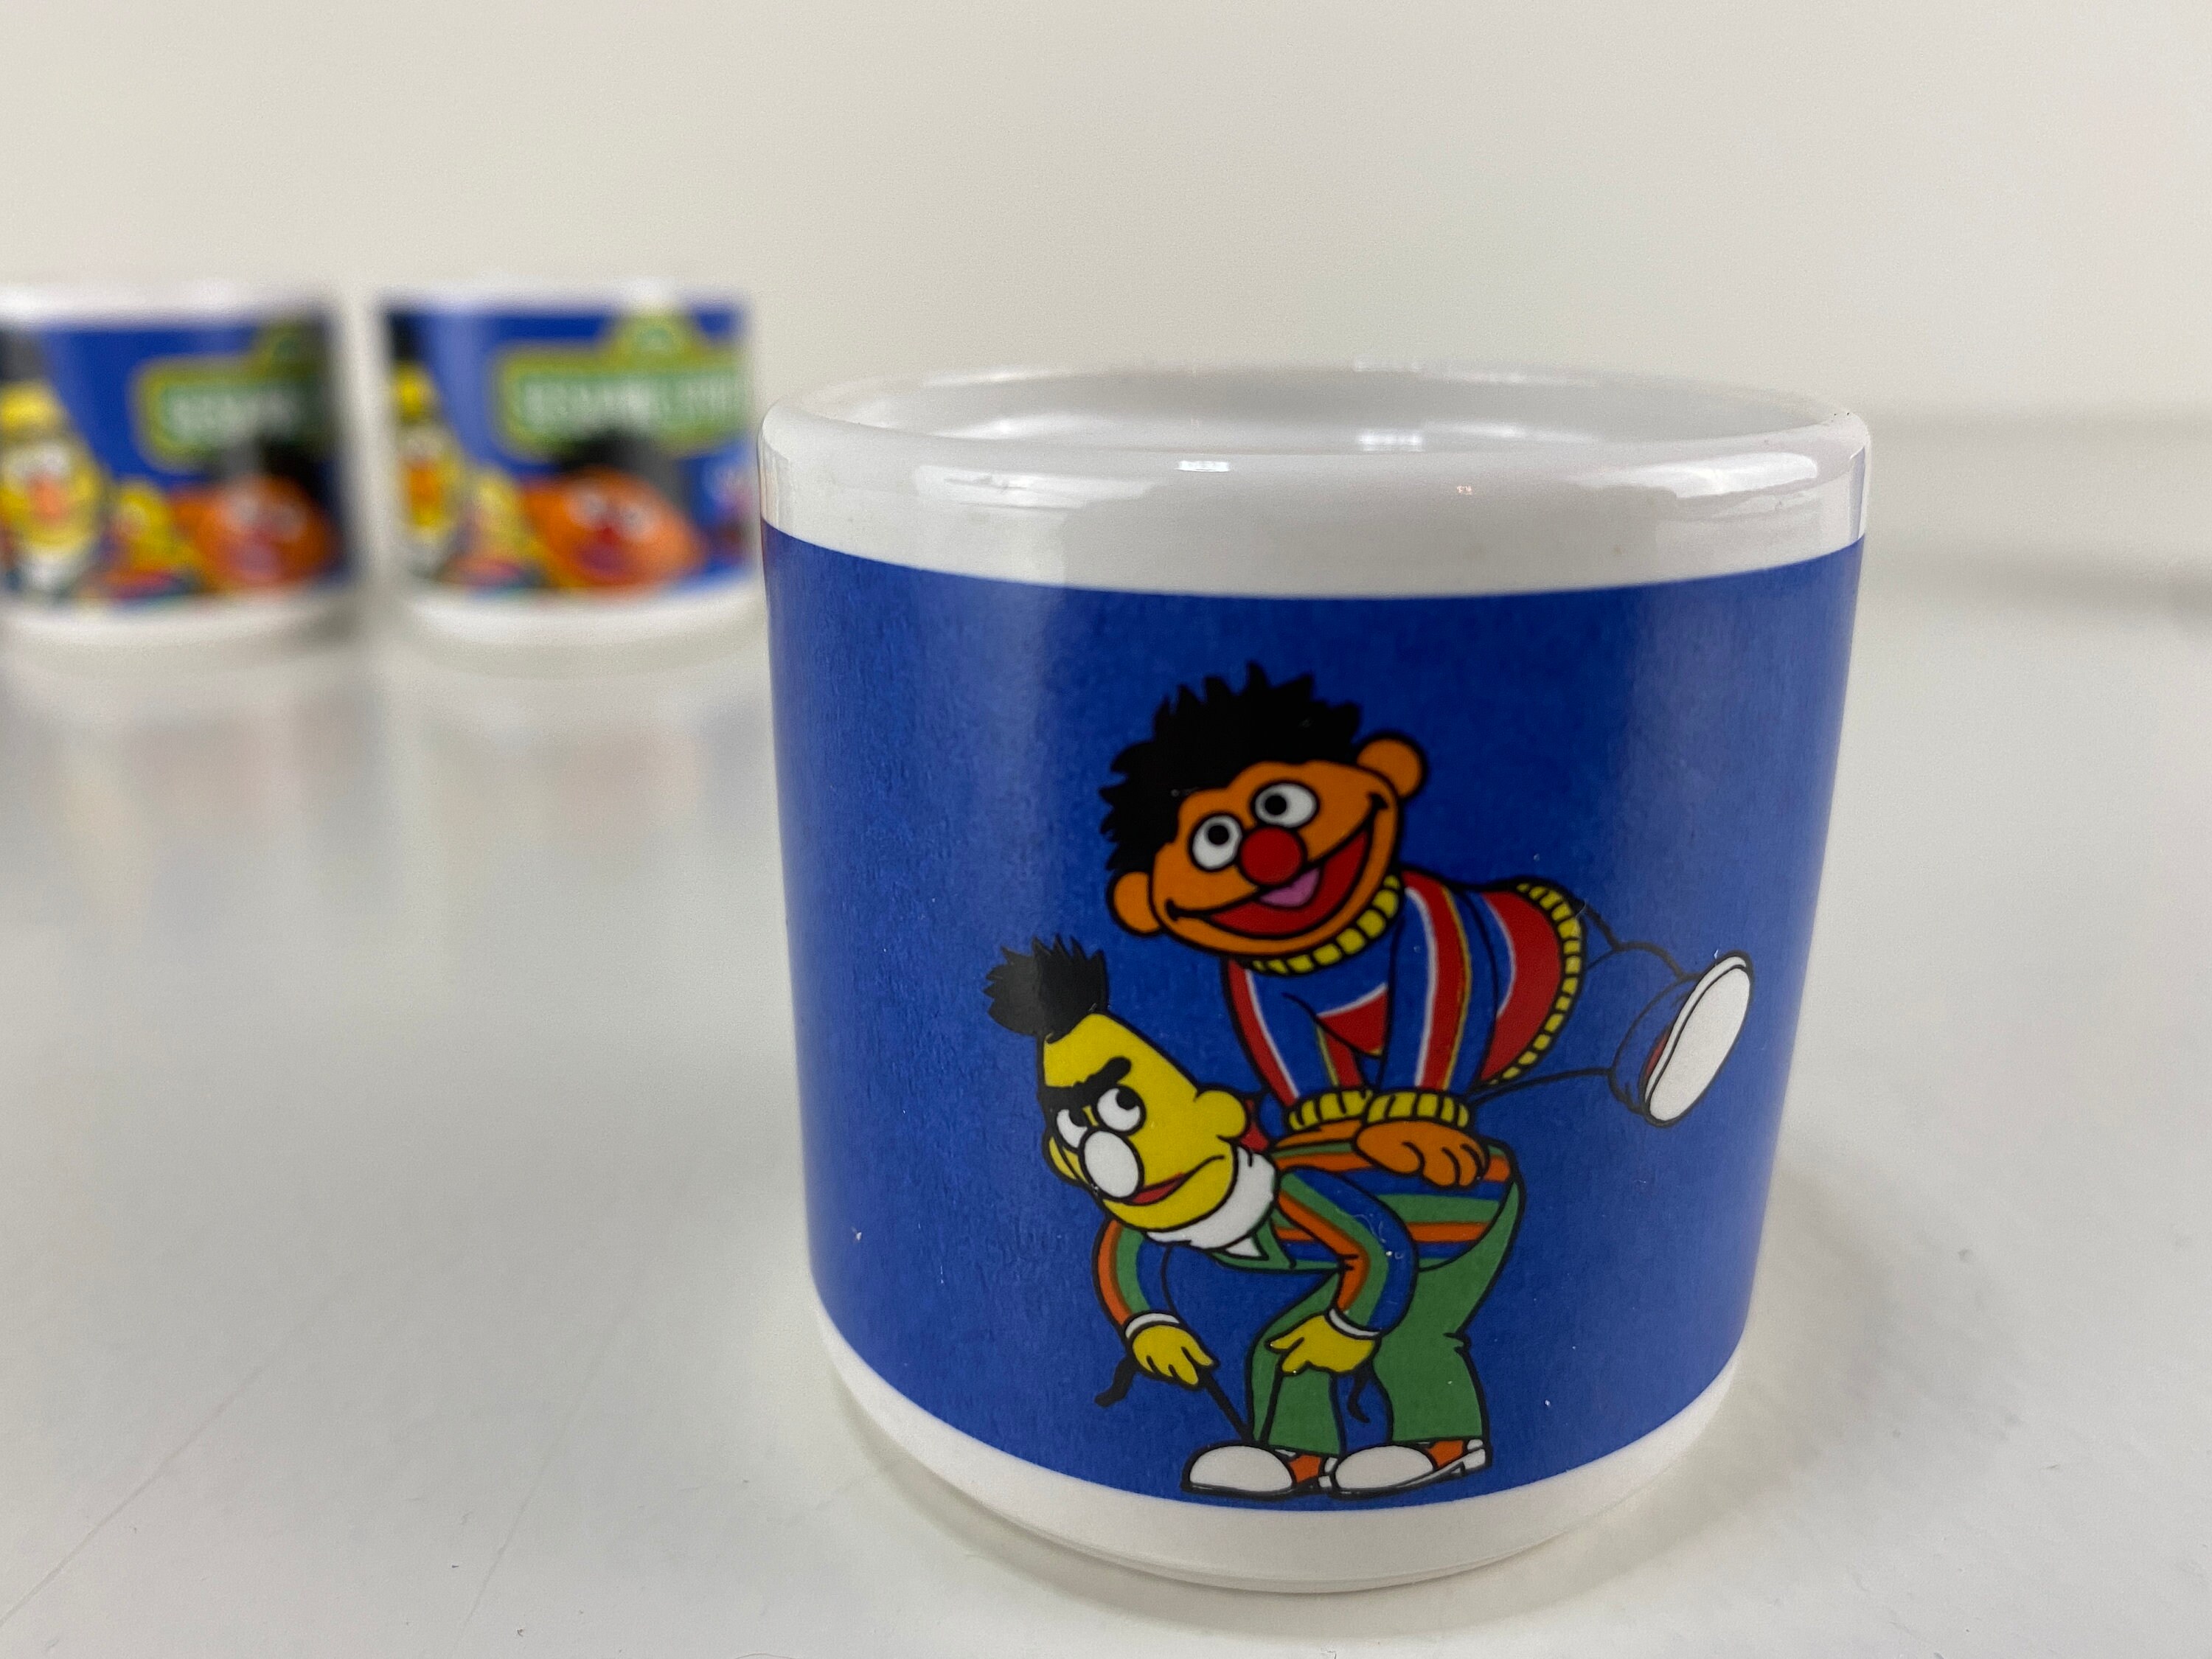 Sesame Street Cookie Monster Cookie Jar, Ceramic